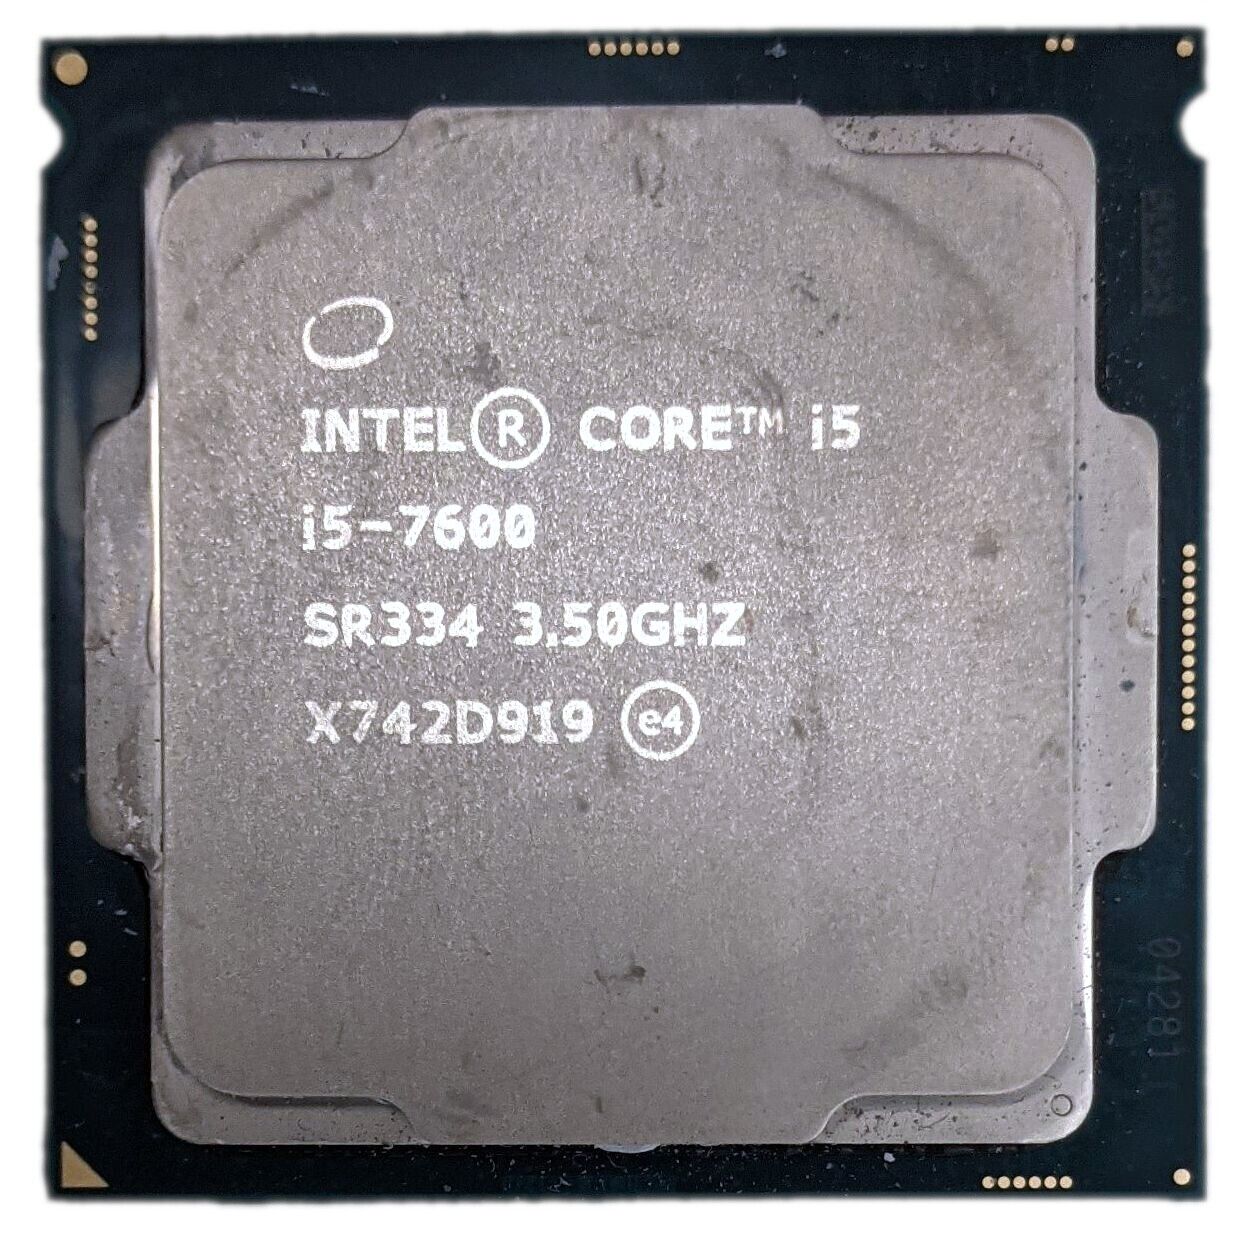 Intel Core i5-7600 3.50GHz 6MB Quad-Core LGA 1151/Socket H4 CPU Processor SR334